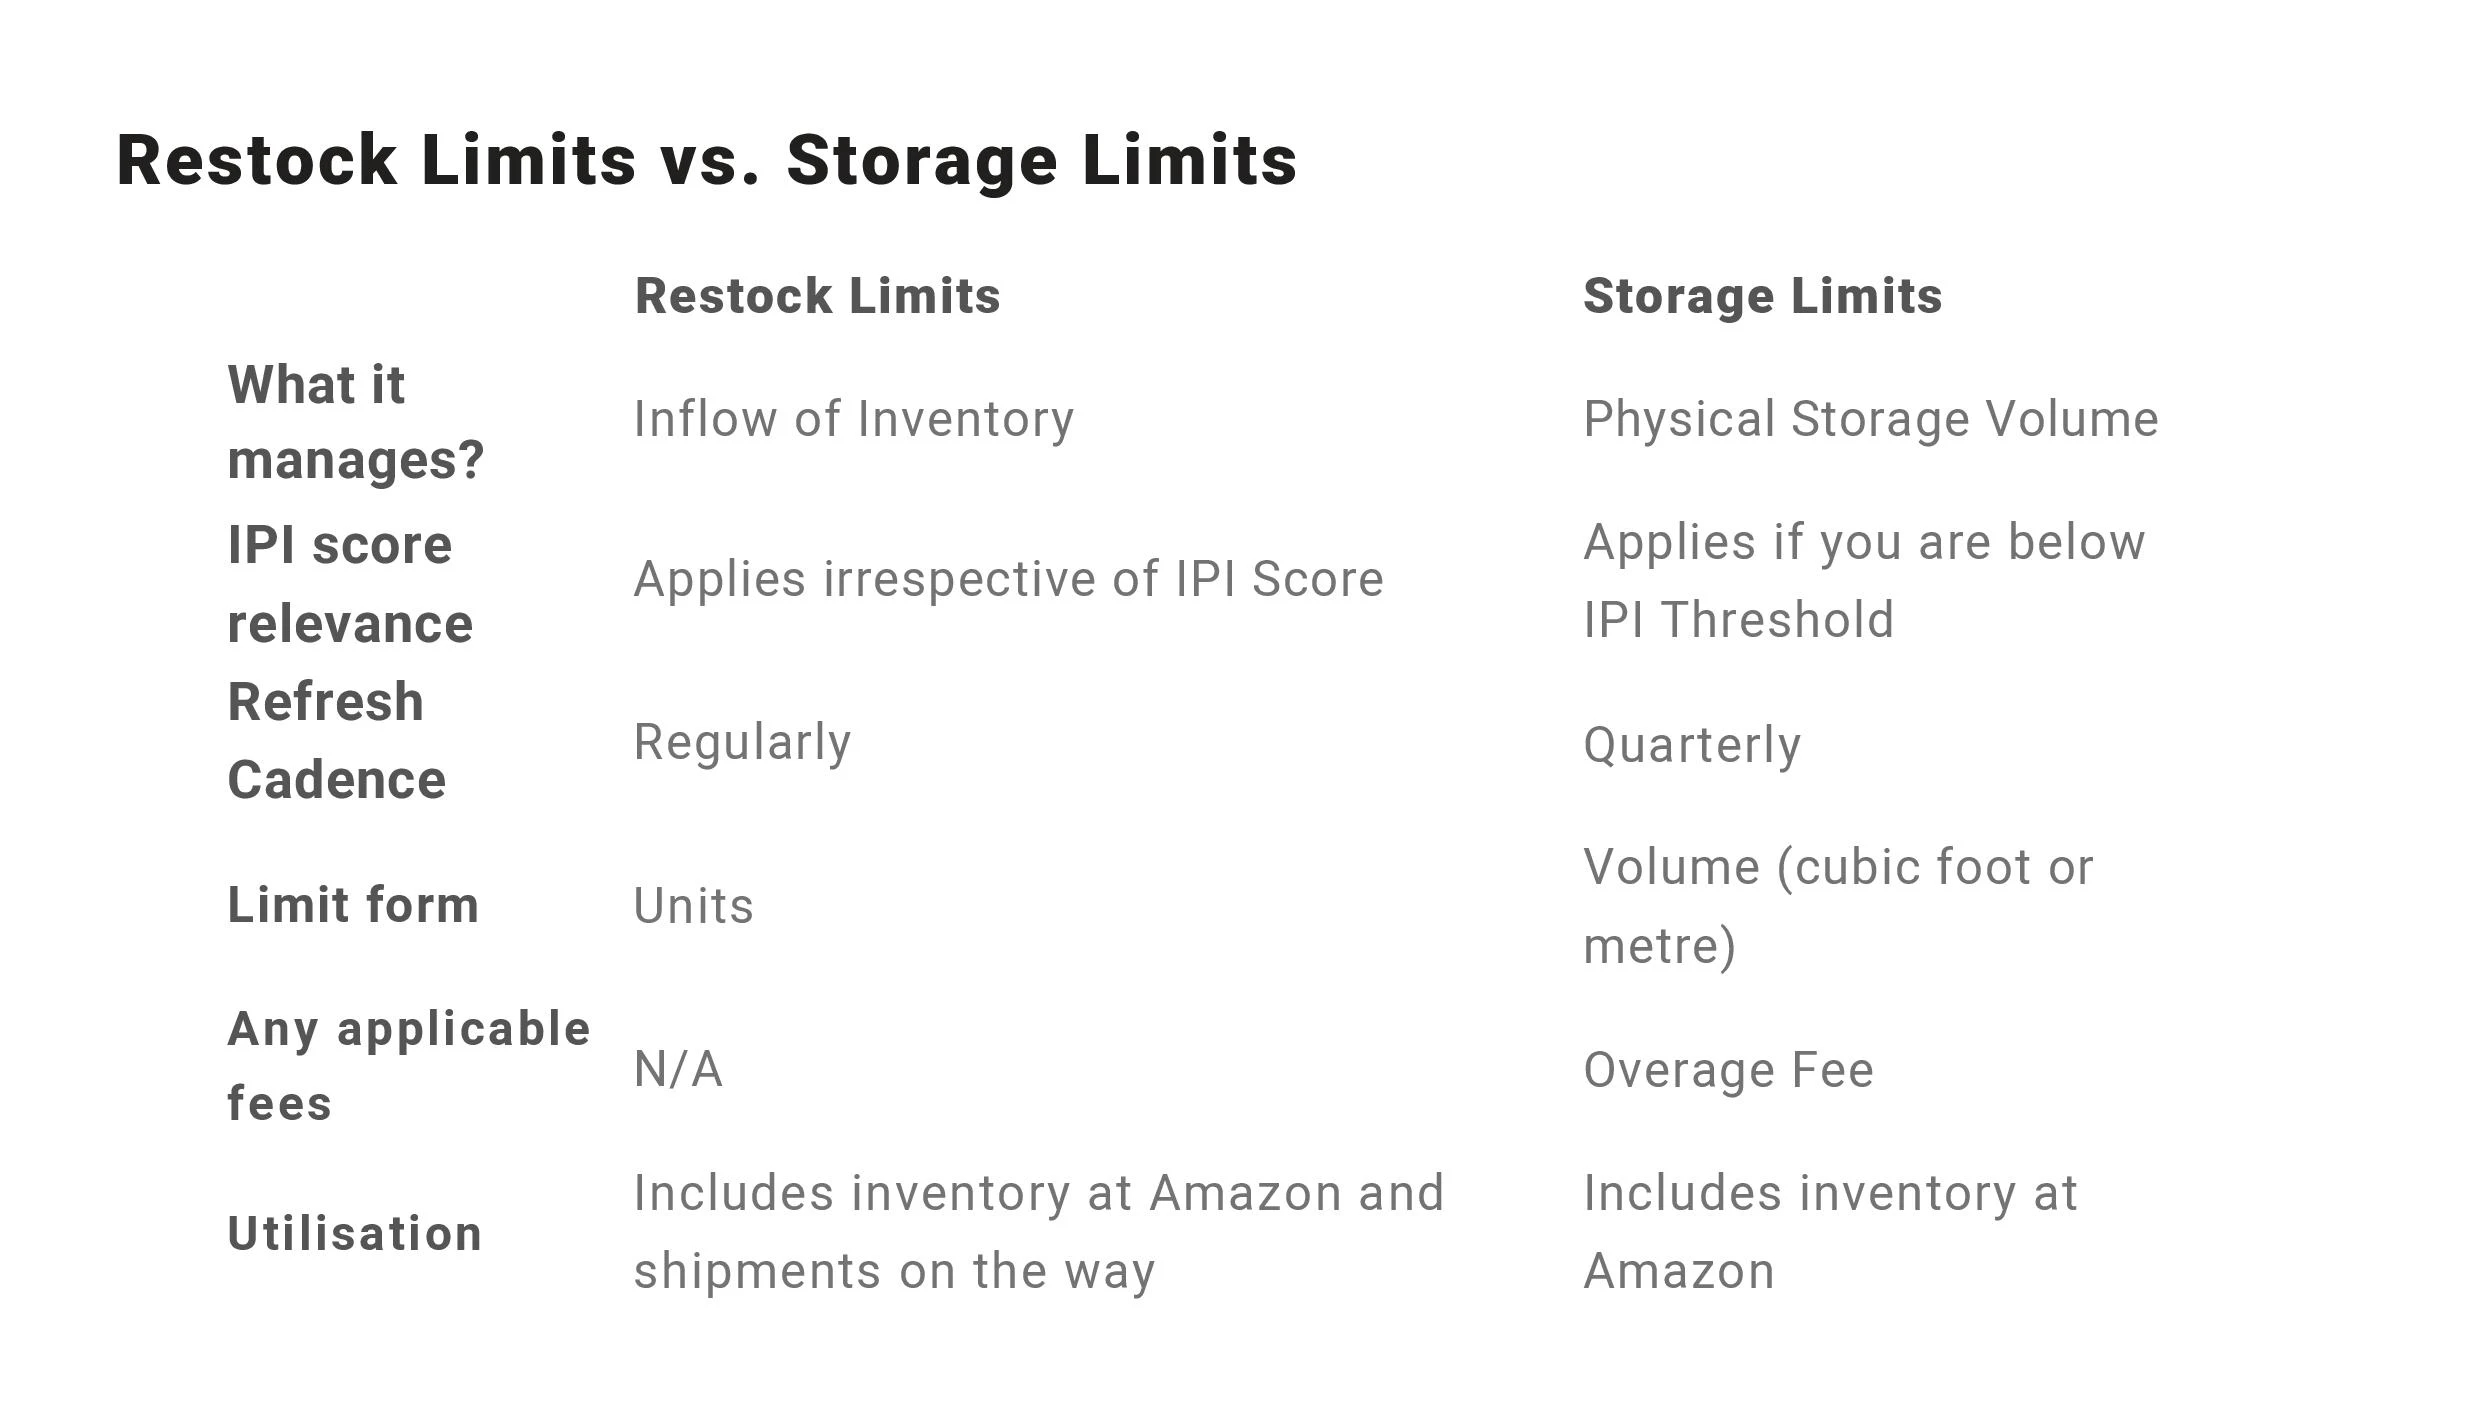 Restock Limits vs Storage Limits